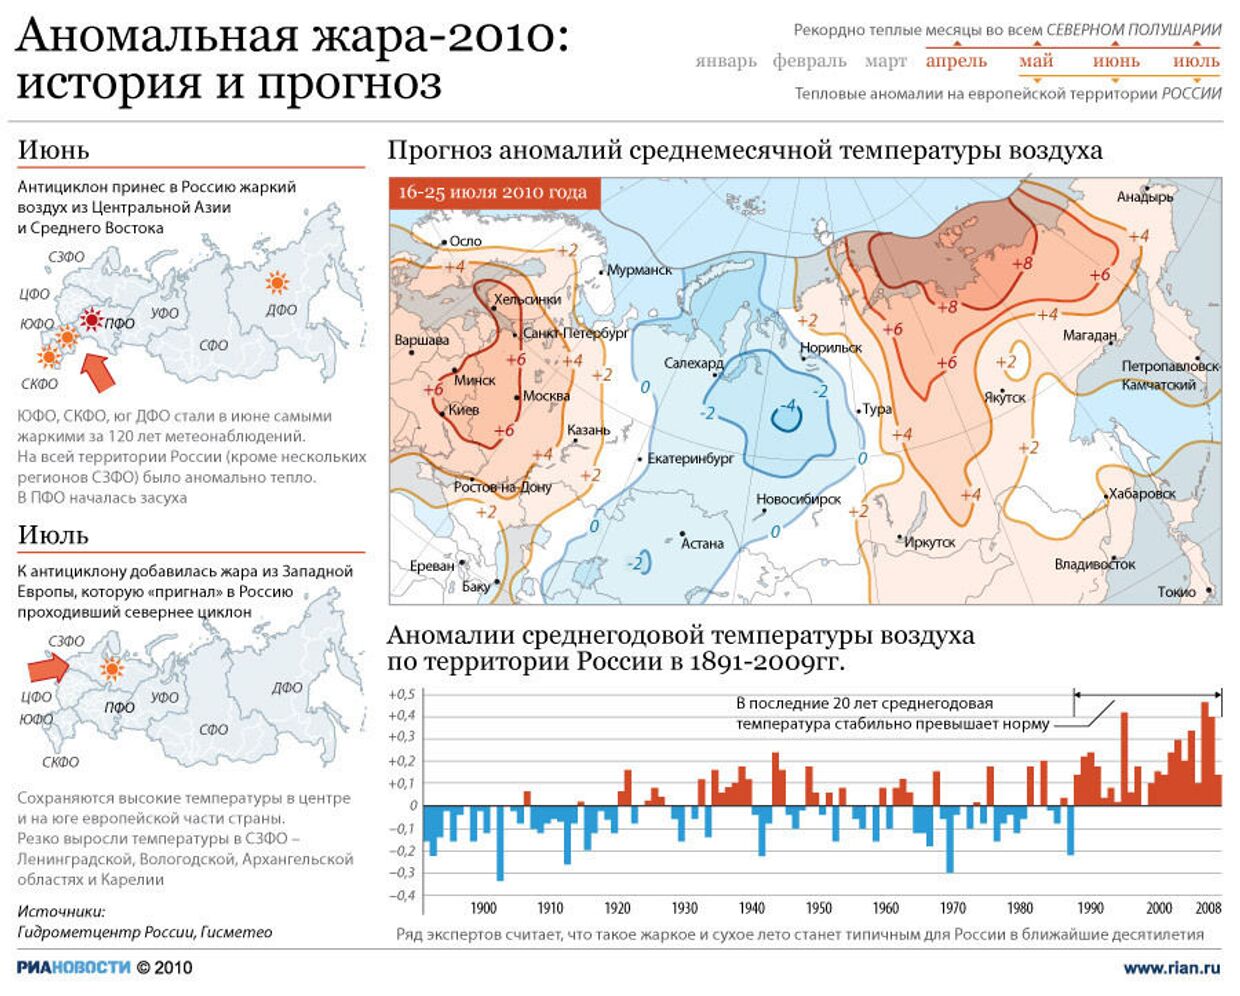 Европейская часть россии температура. Лето 2010 года аномальная жара. Аномальная жара 2010 года в России. Аномальной жары в России 2010 года. Аномально жаркое лето 2010 года в России.